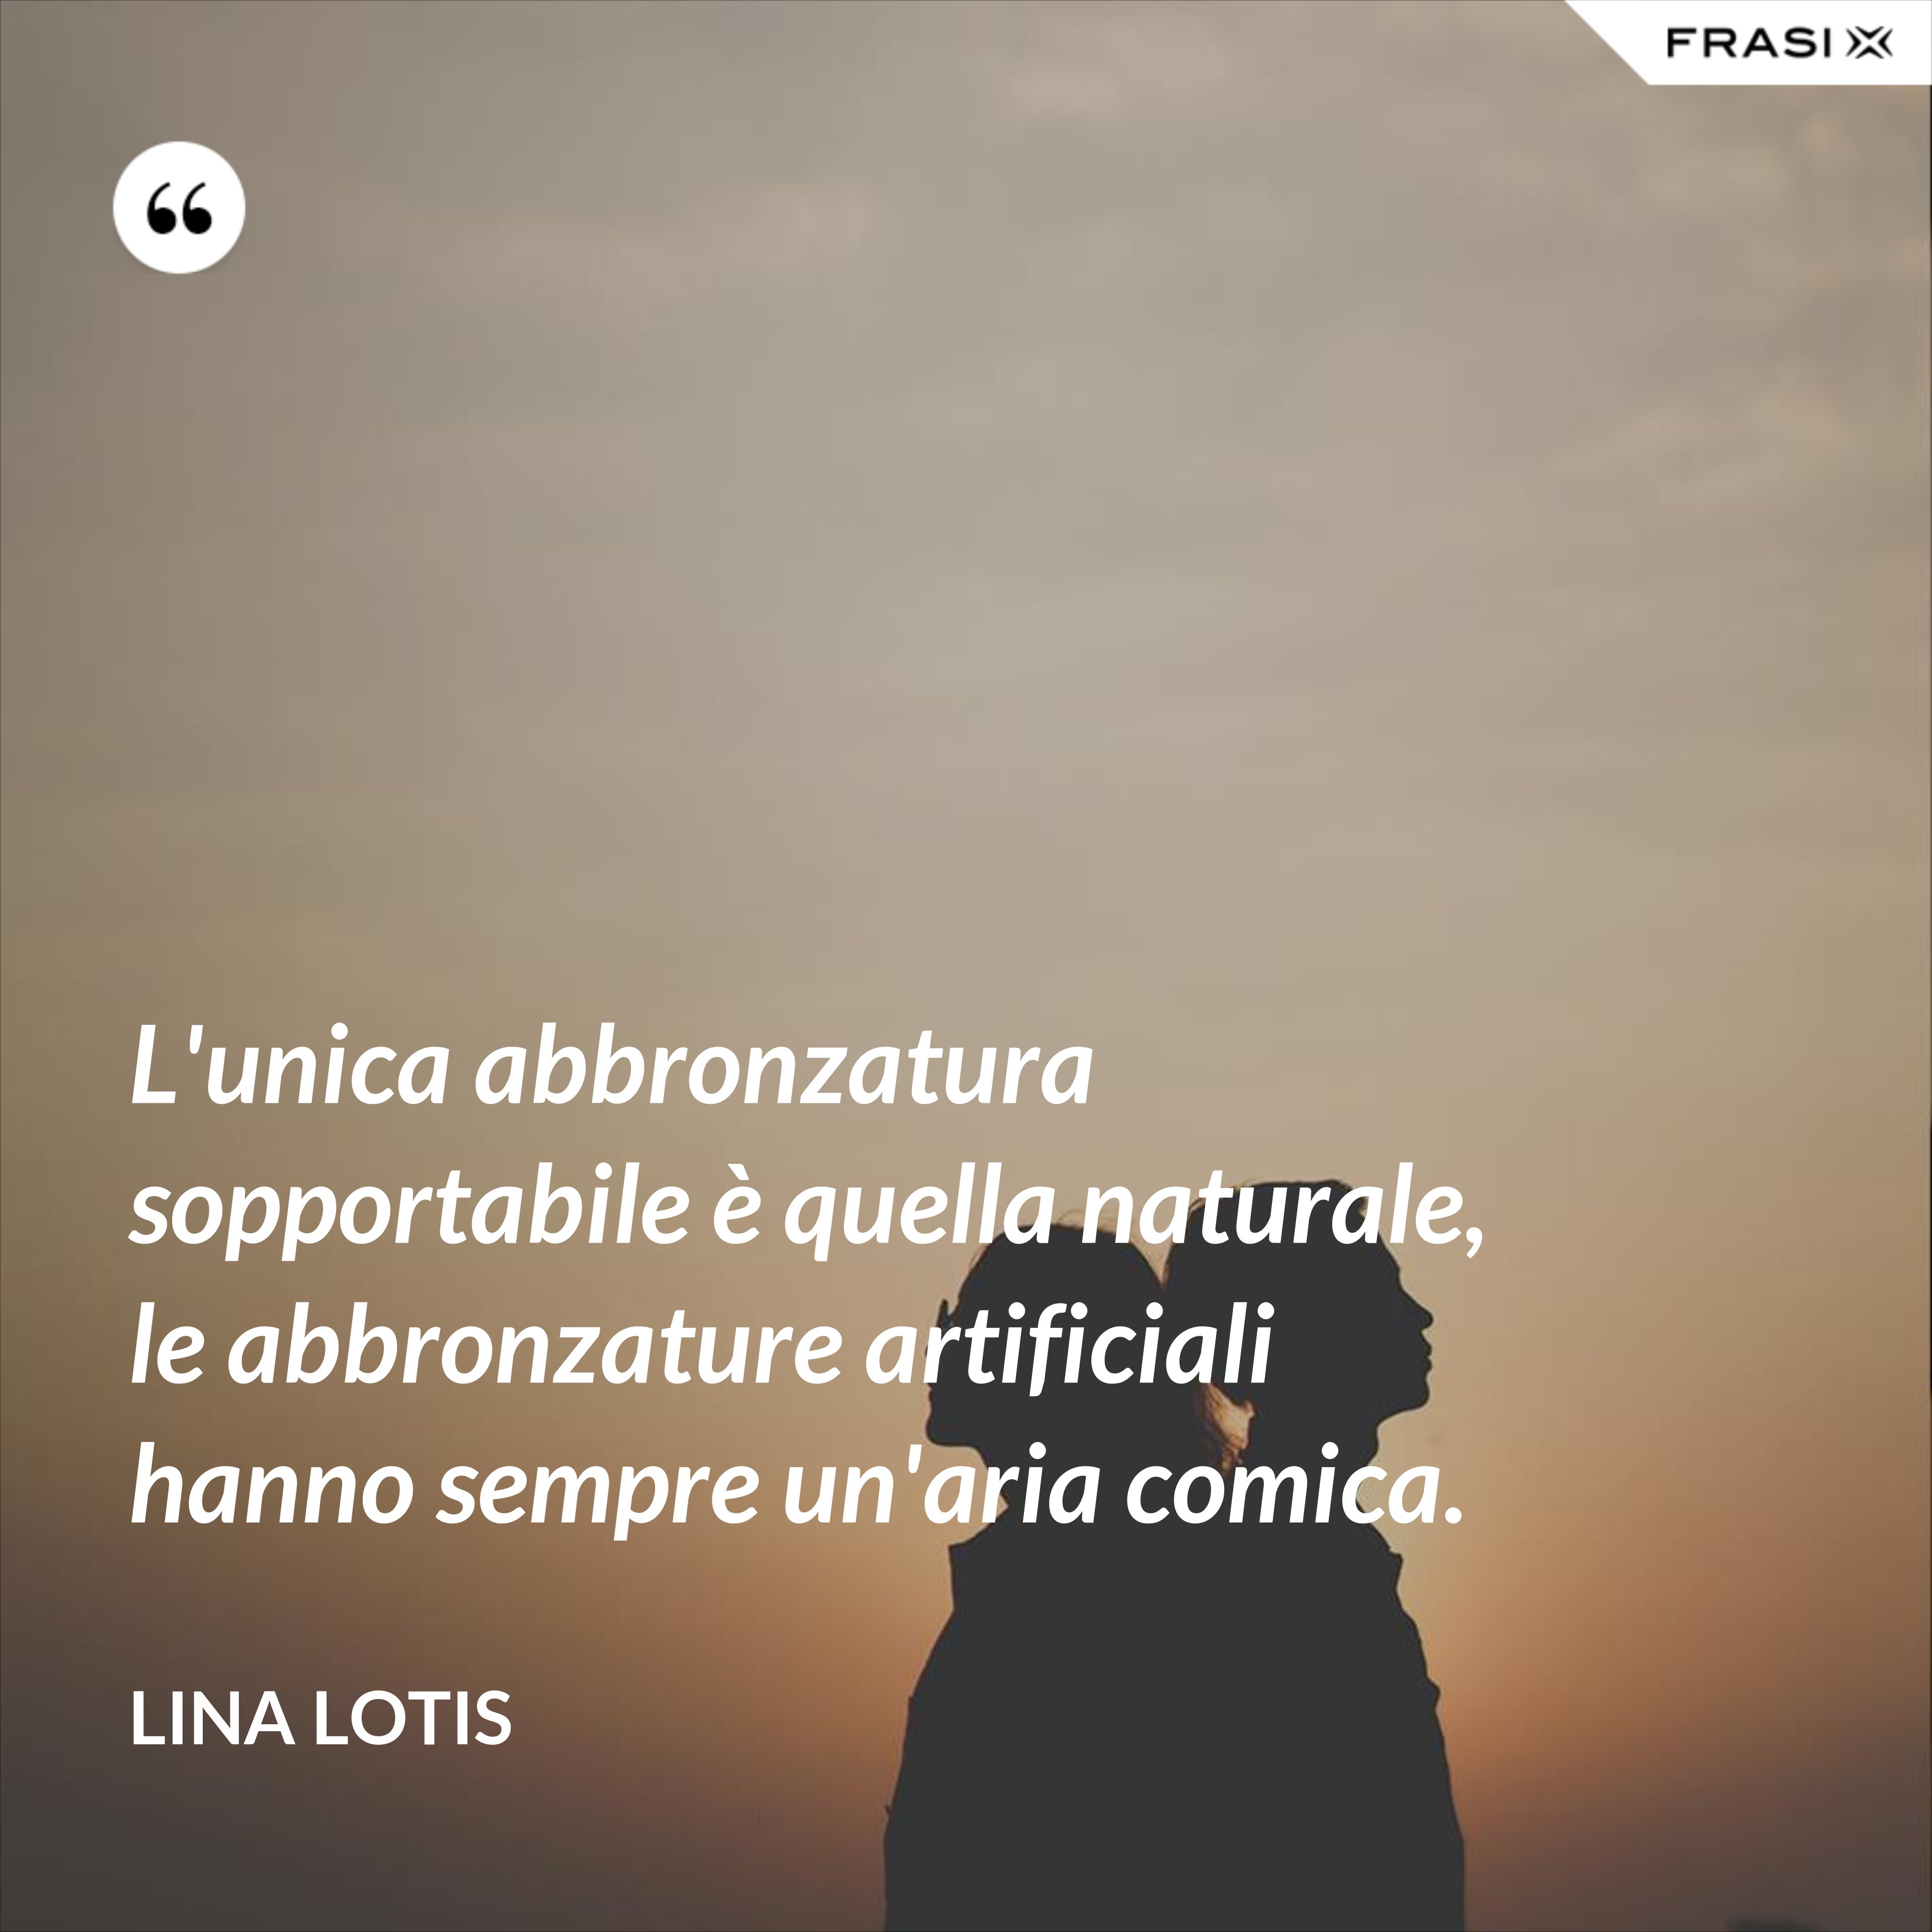 L'unica abbronzatura sopportabile è quella naturale, le abbronzature artificiali hanno sempre un'aria comica. - Lina Lotis